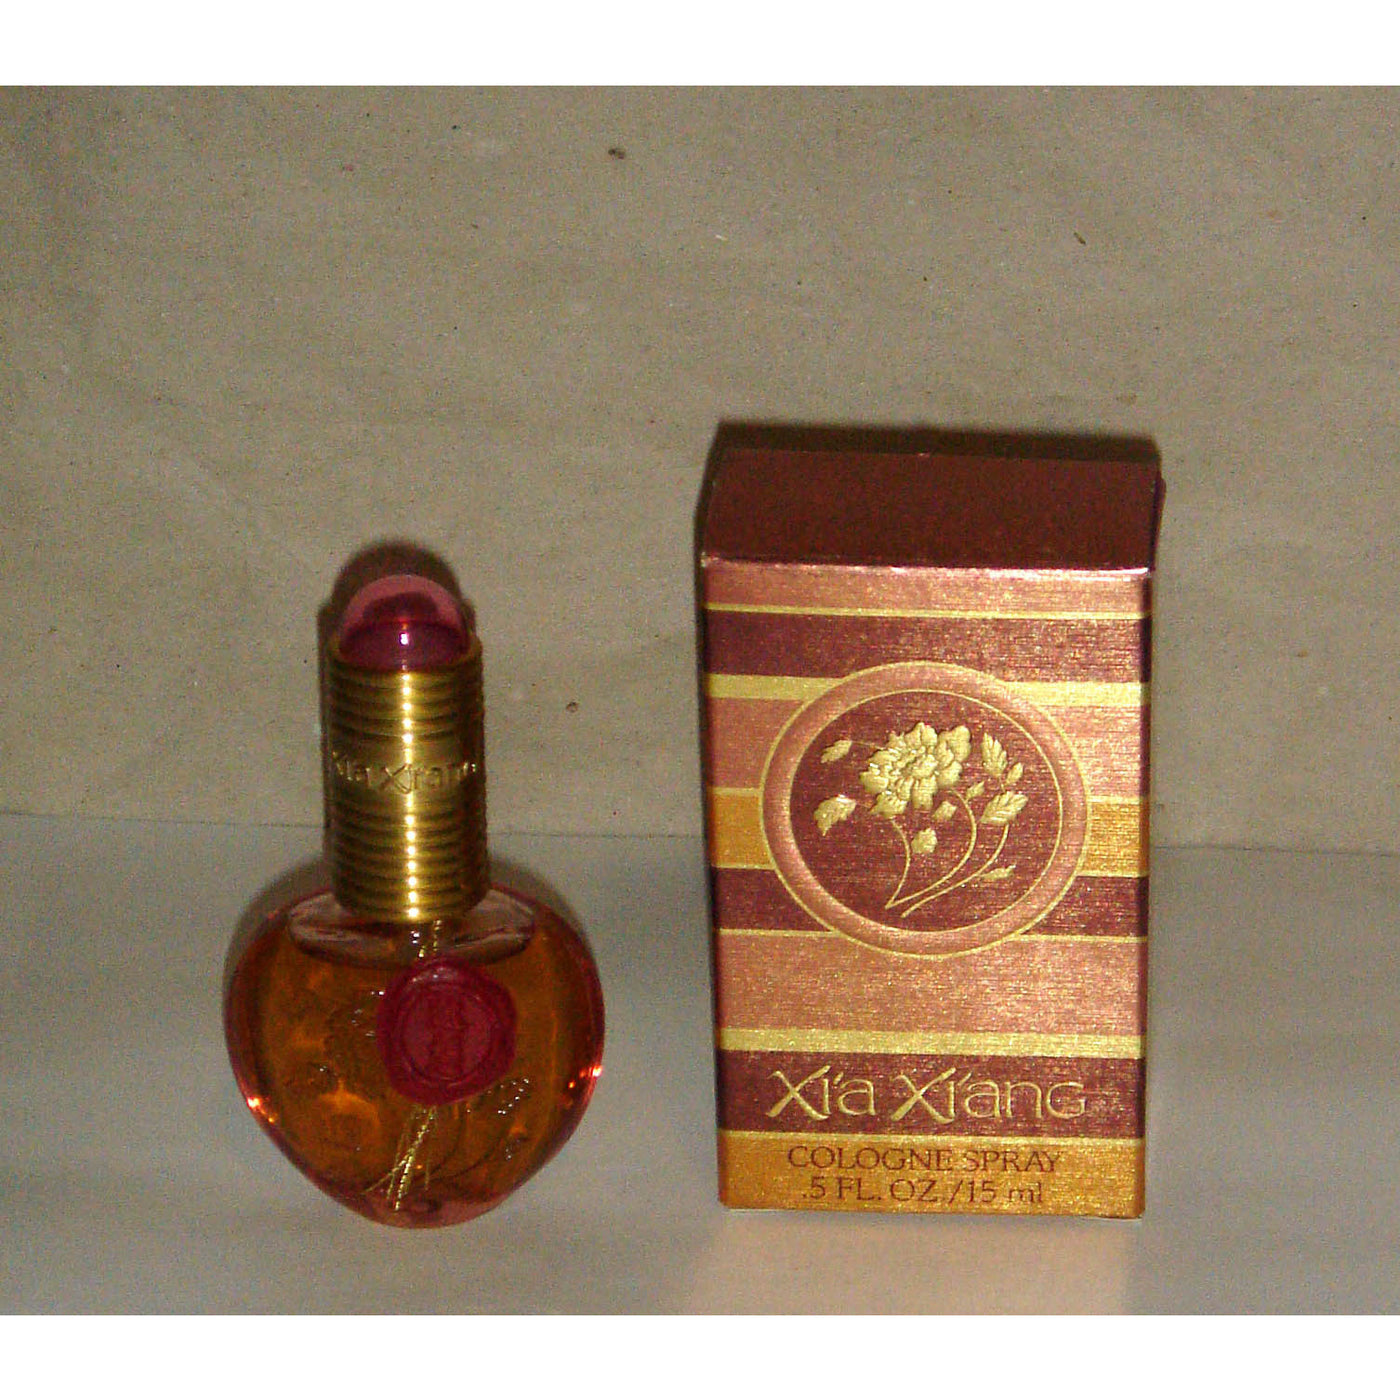 Vintage Xia Xiang Cologne Spray